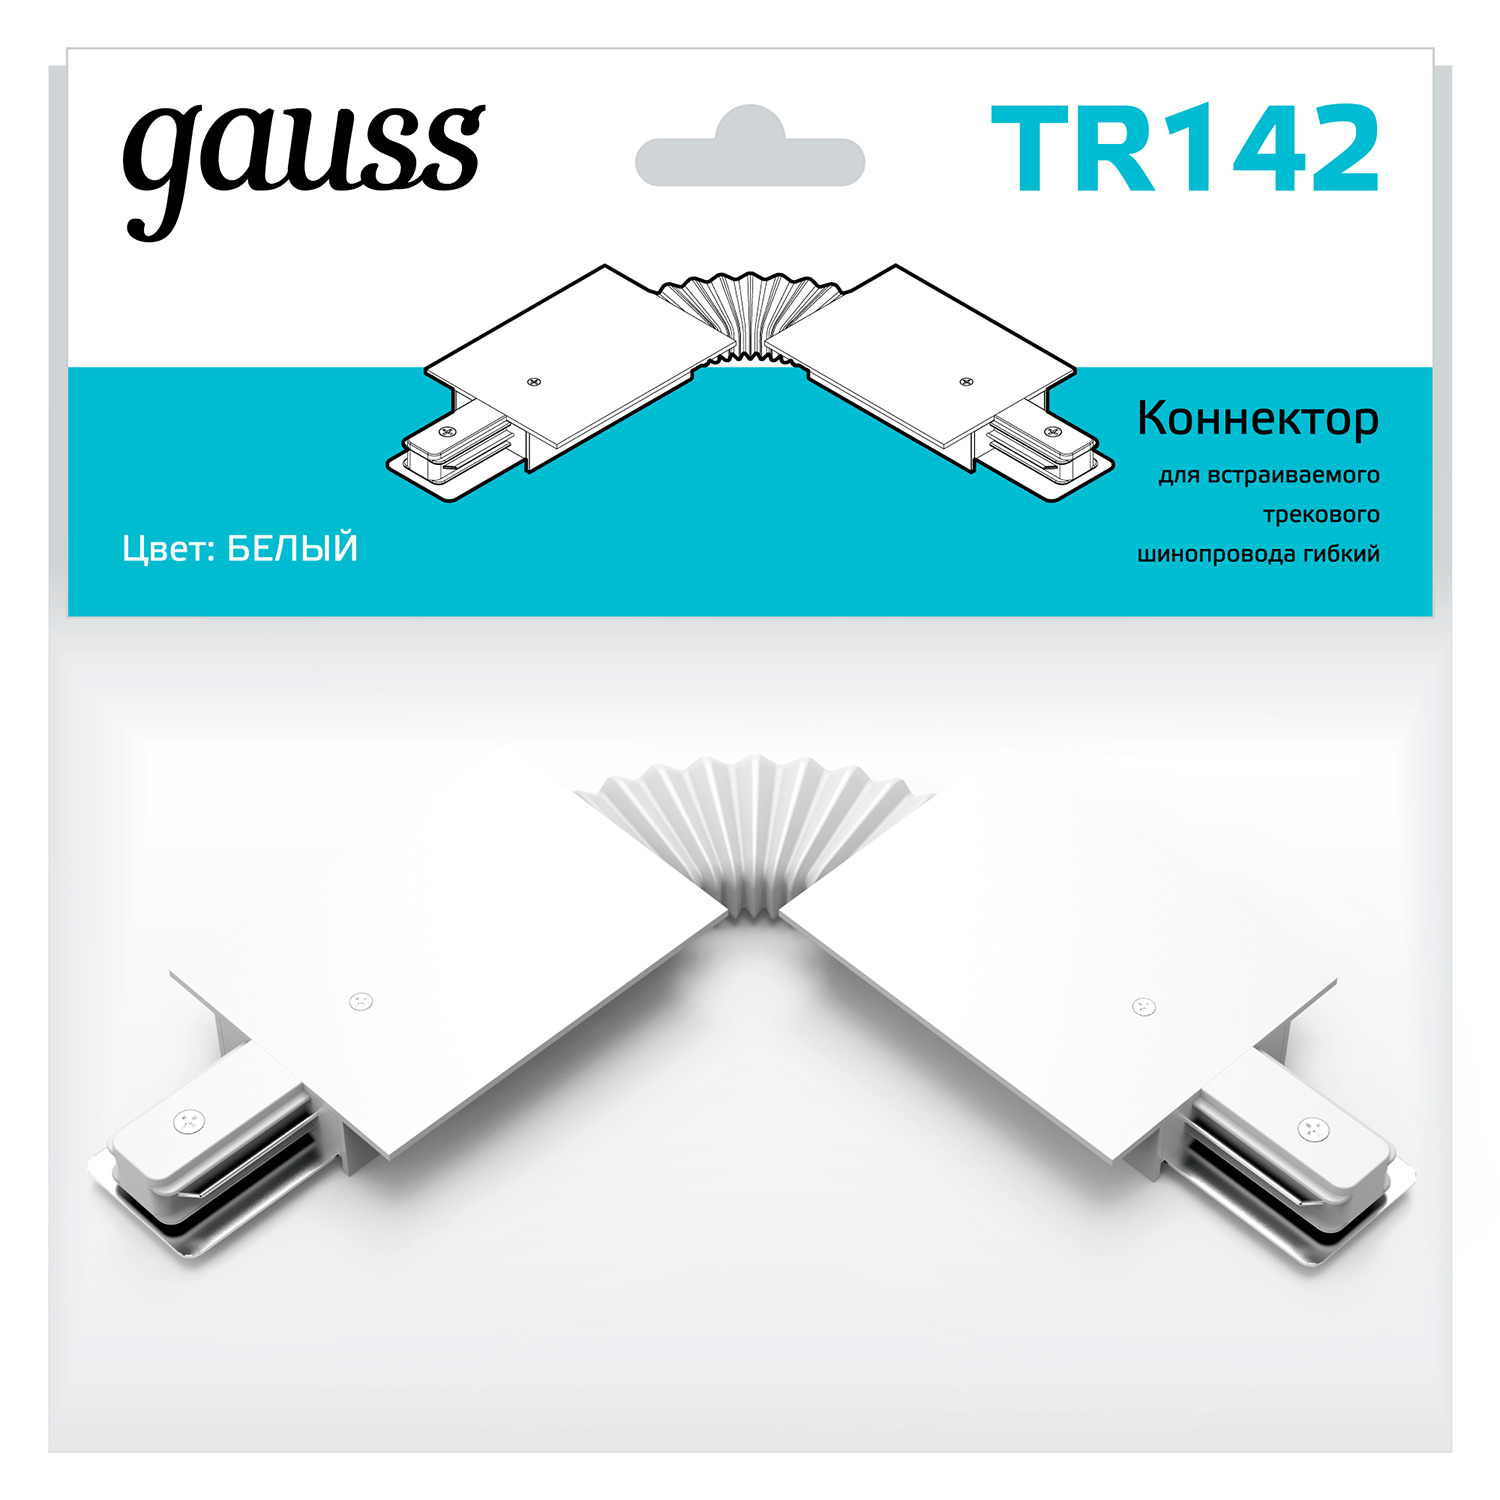 Коннектор Gauss для встраиваемых трековых шинопроводов гибкий (I) белый гибкий коннектор для встраиваемых трековых шинопроводов gauss